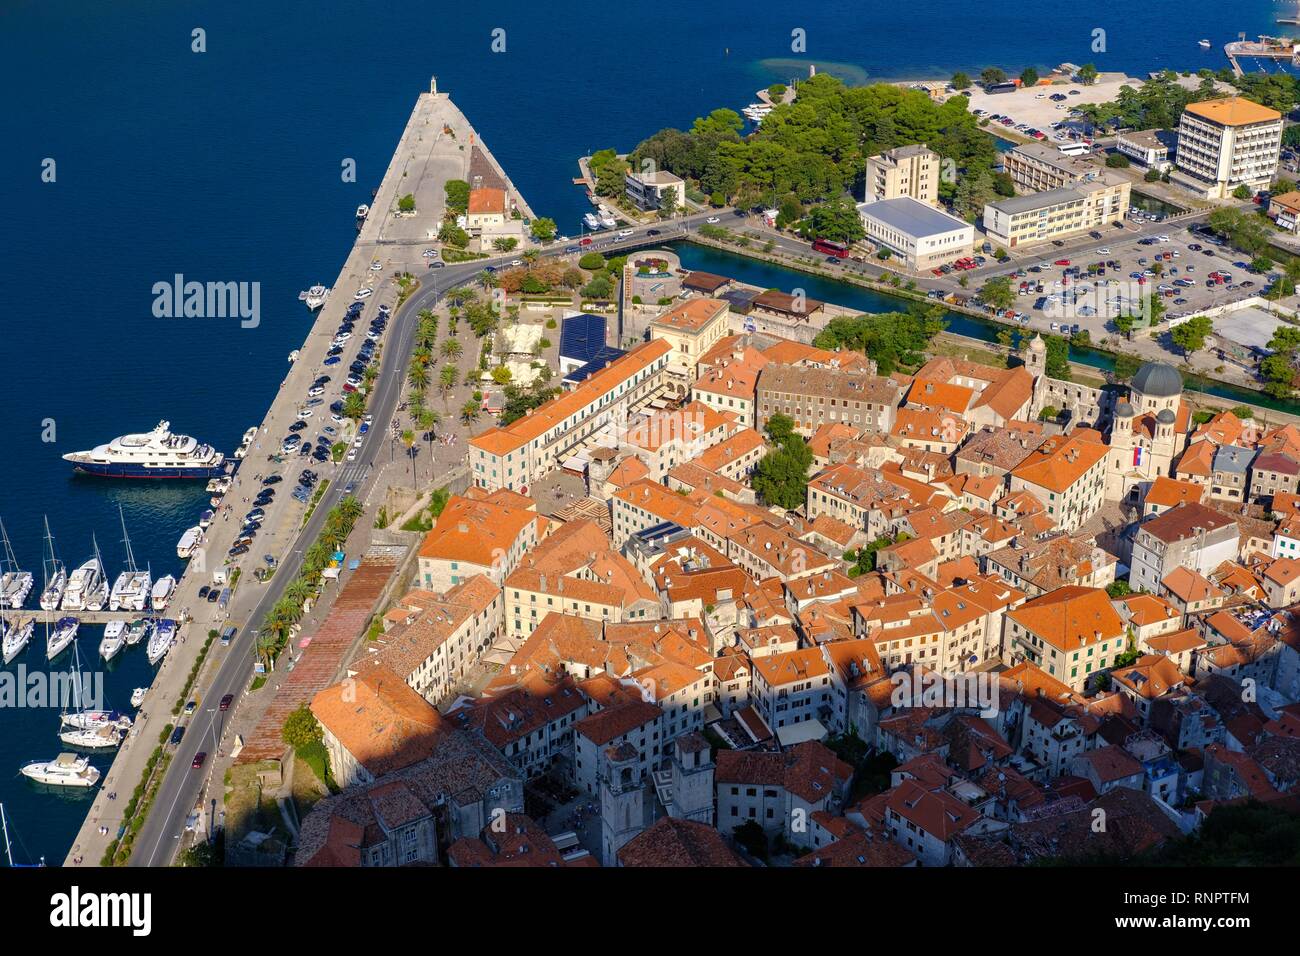 Old Town of Kotor, Bay of Kotor, Montenegro Stock Photo